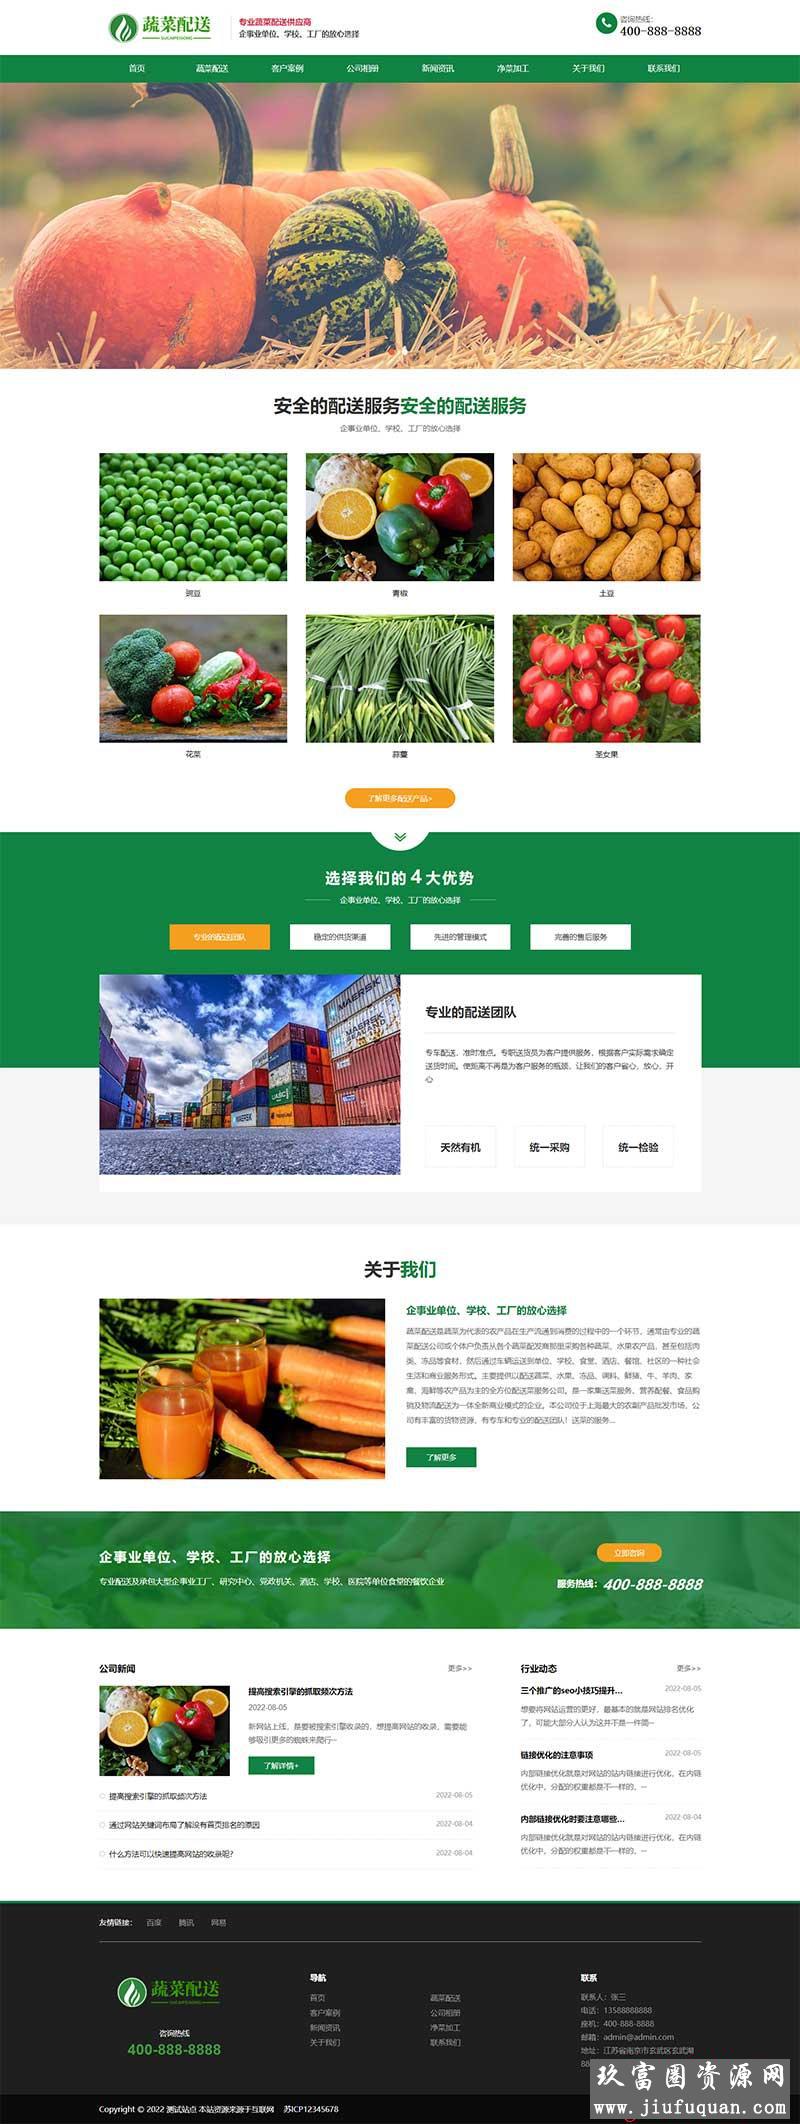 响应式蔬菜配送网站pbootcms模板